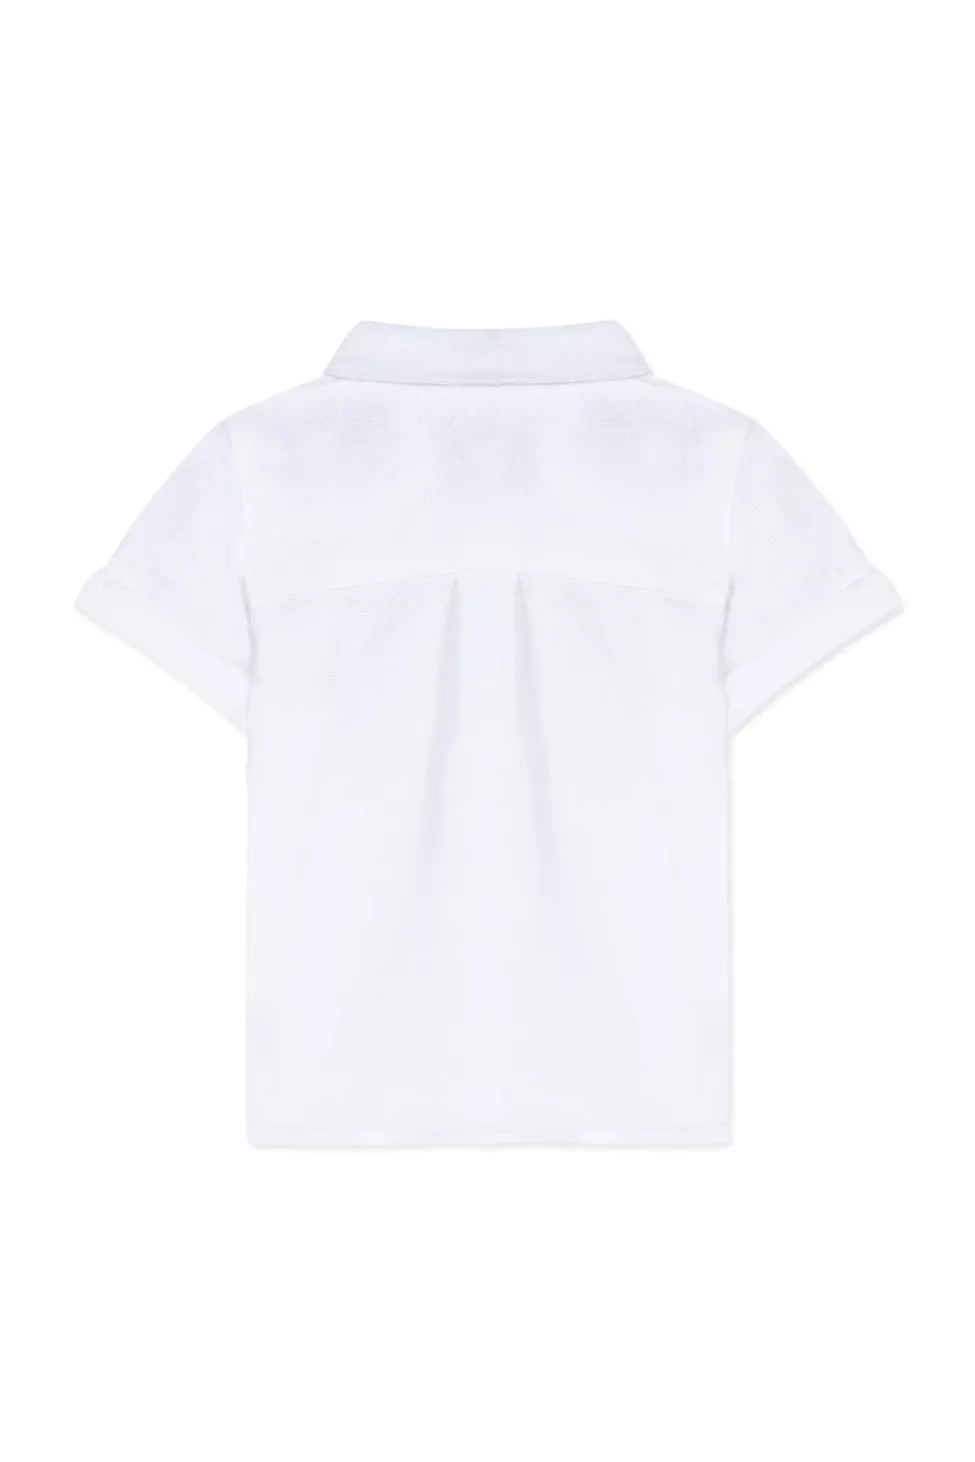 Tartine Baby Short Sleeve Button Down - Blanc